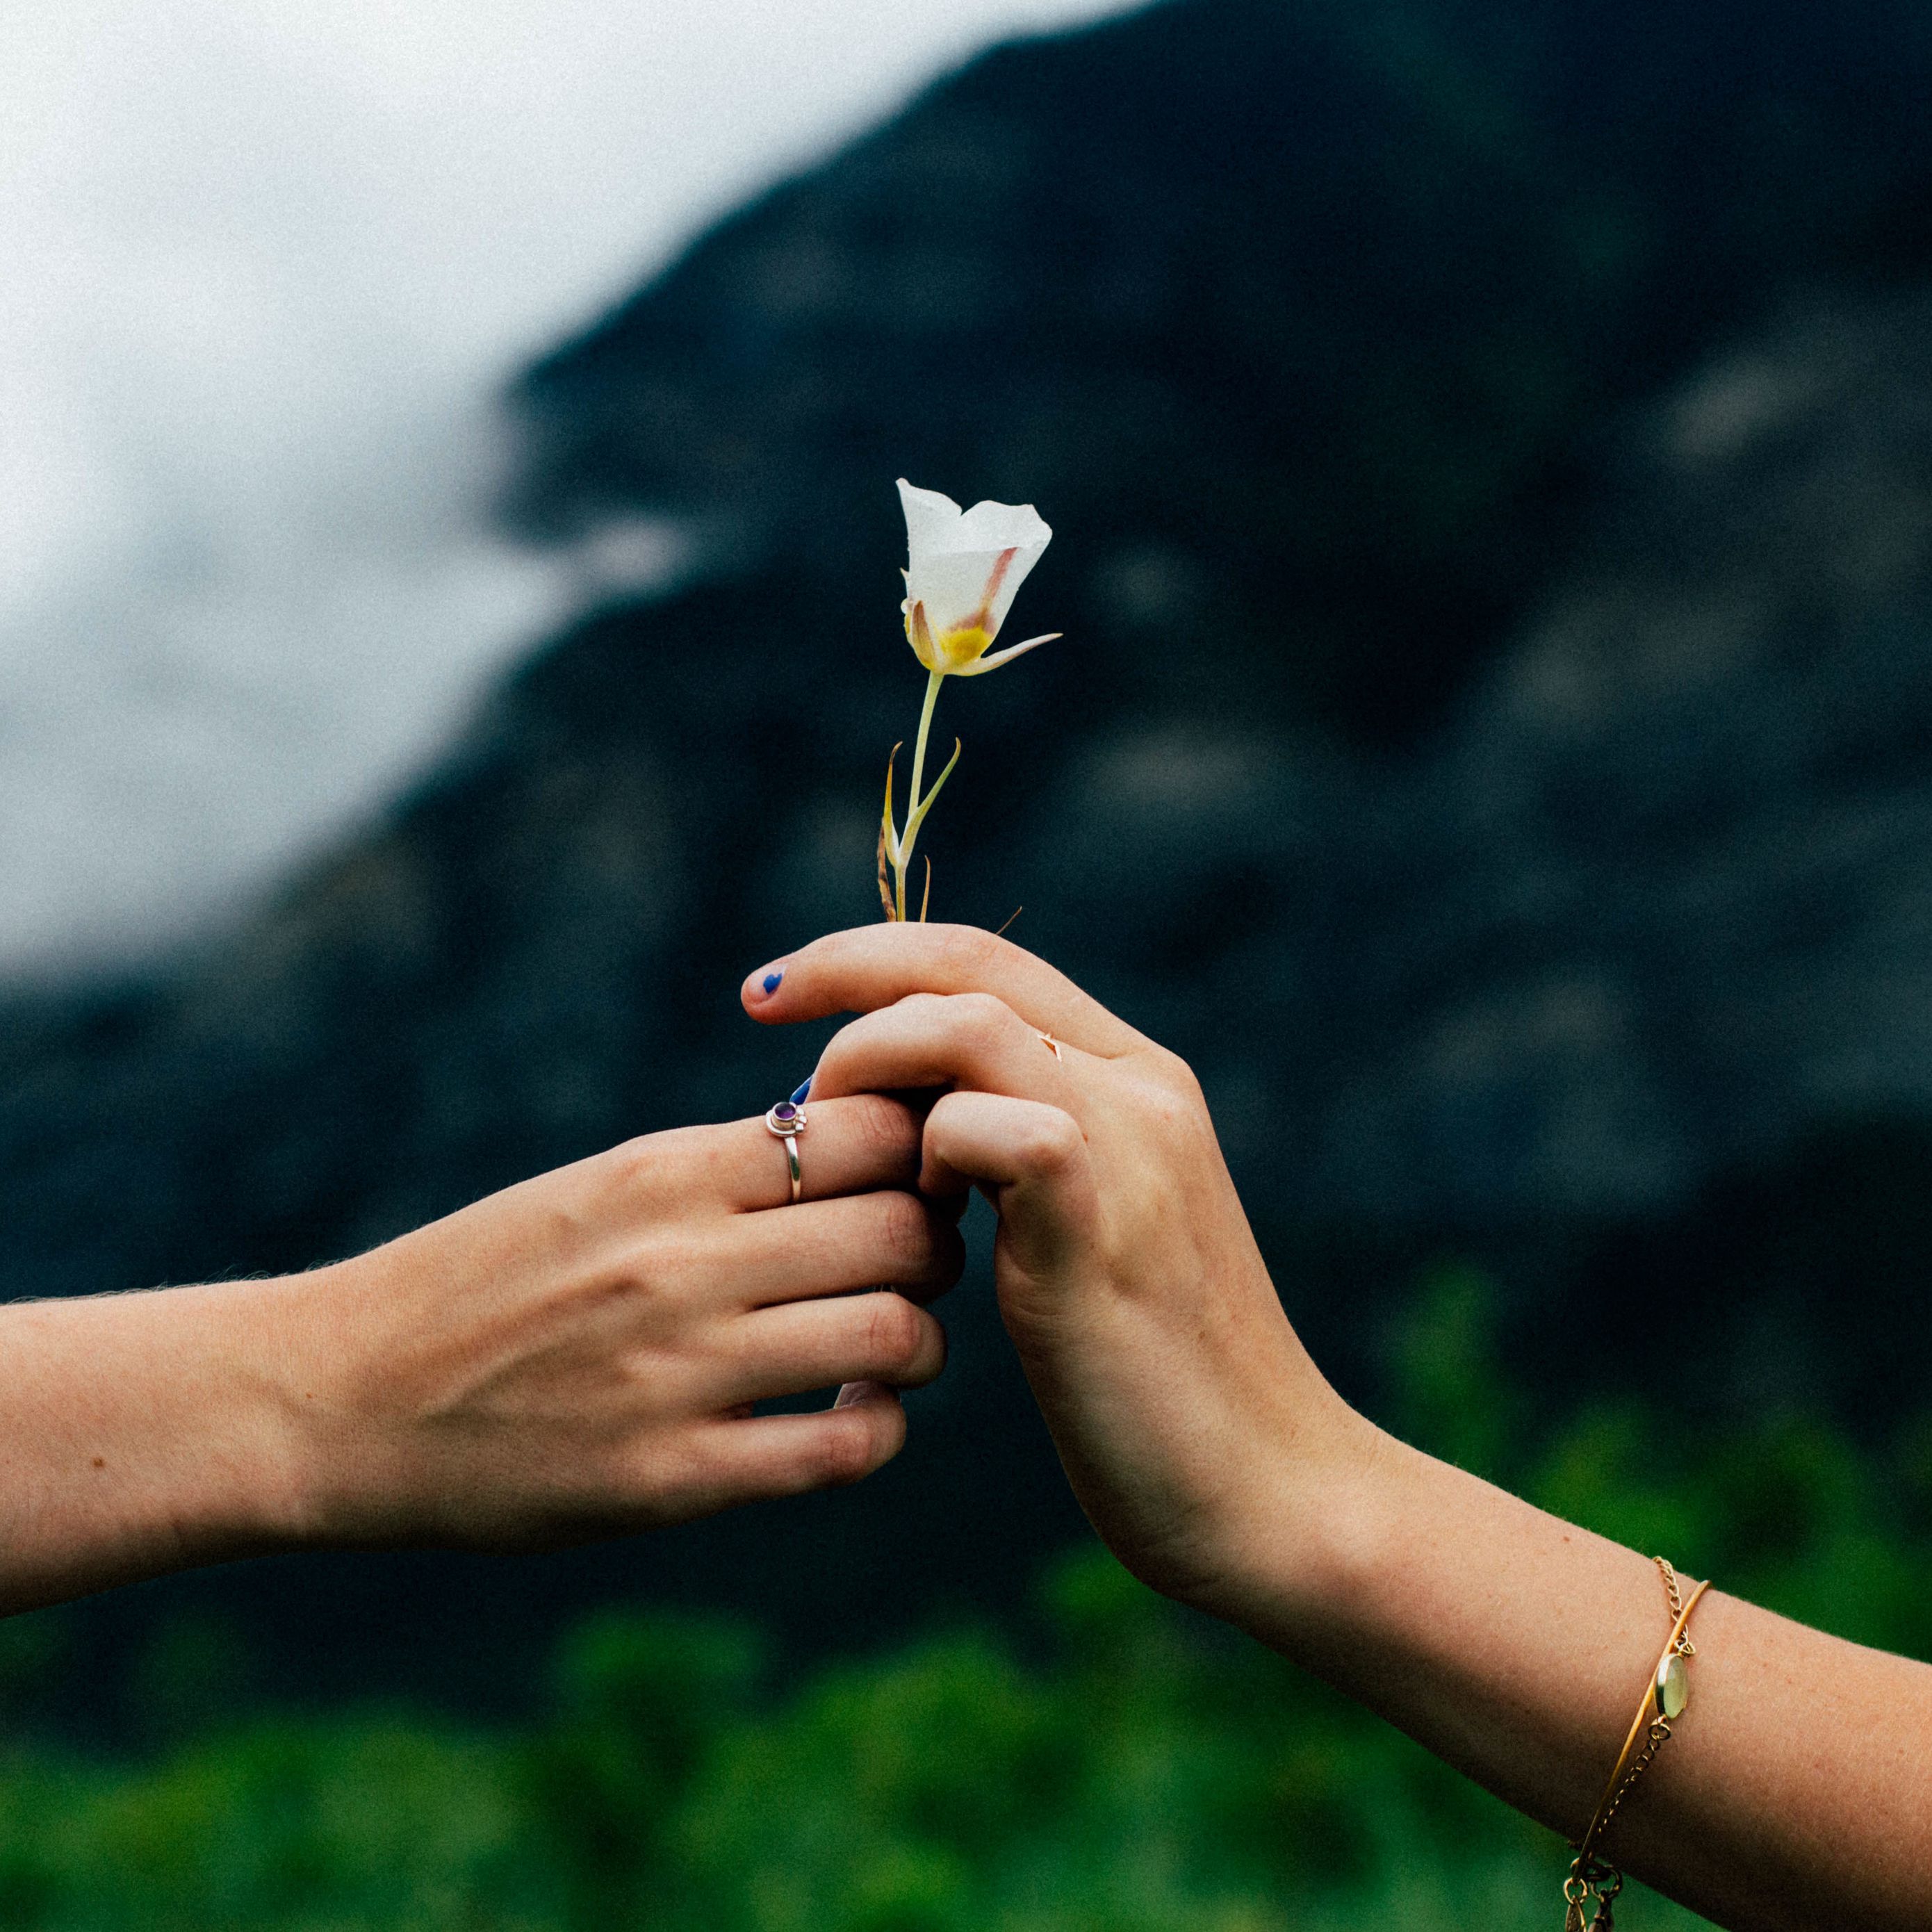 Счастье в прощении. Любовь к природе. Простота жизни. Рука держит цветок. Цветок на руку..